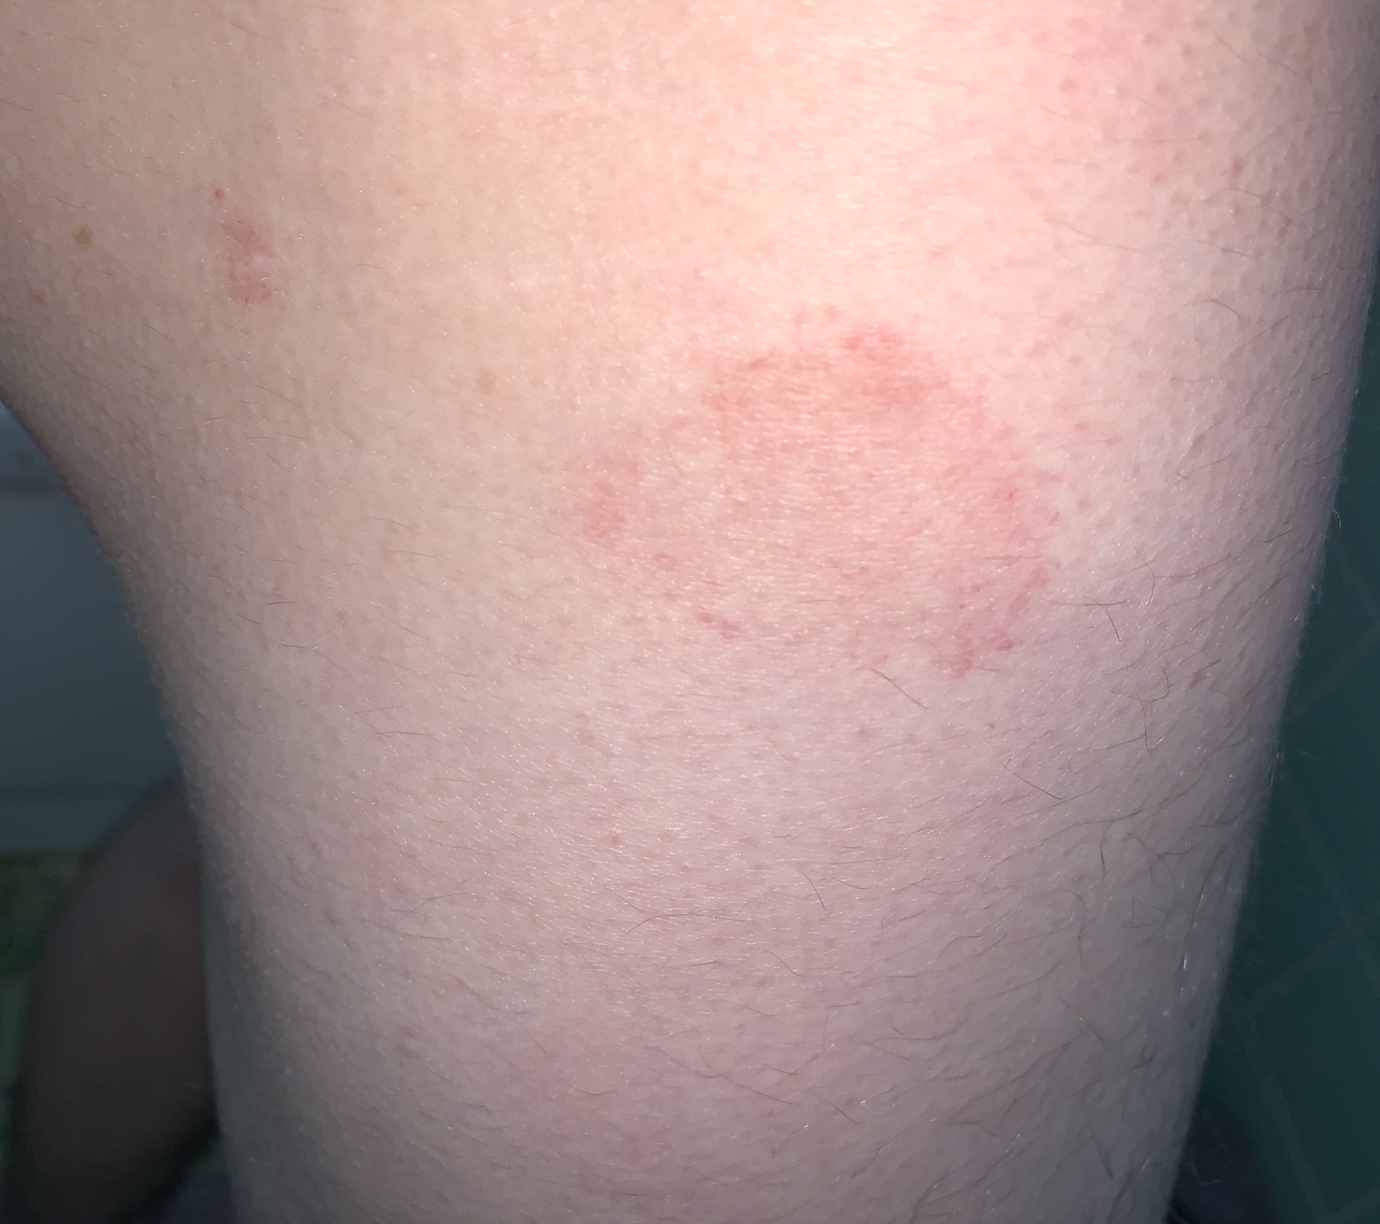 Warts hands rash - Hpv skin rash